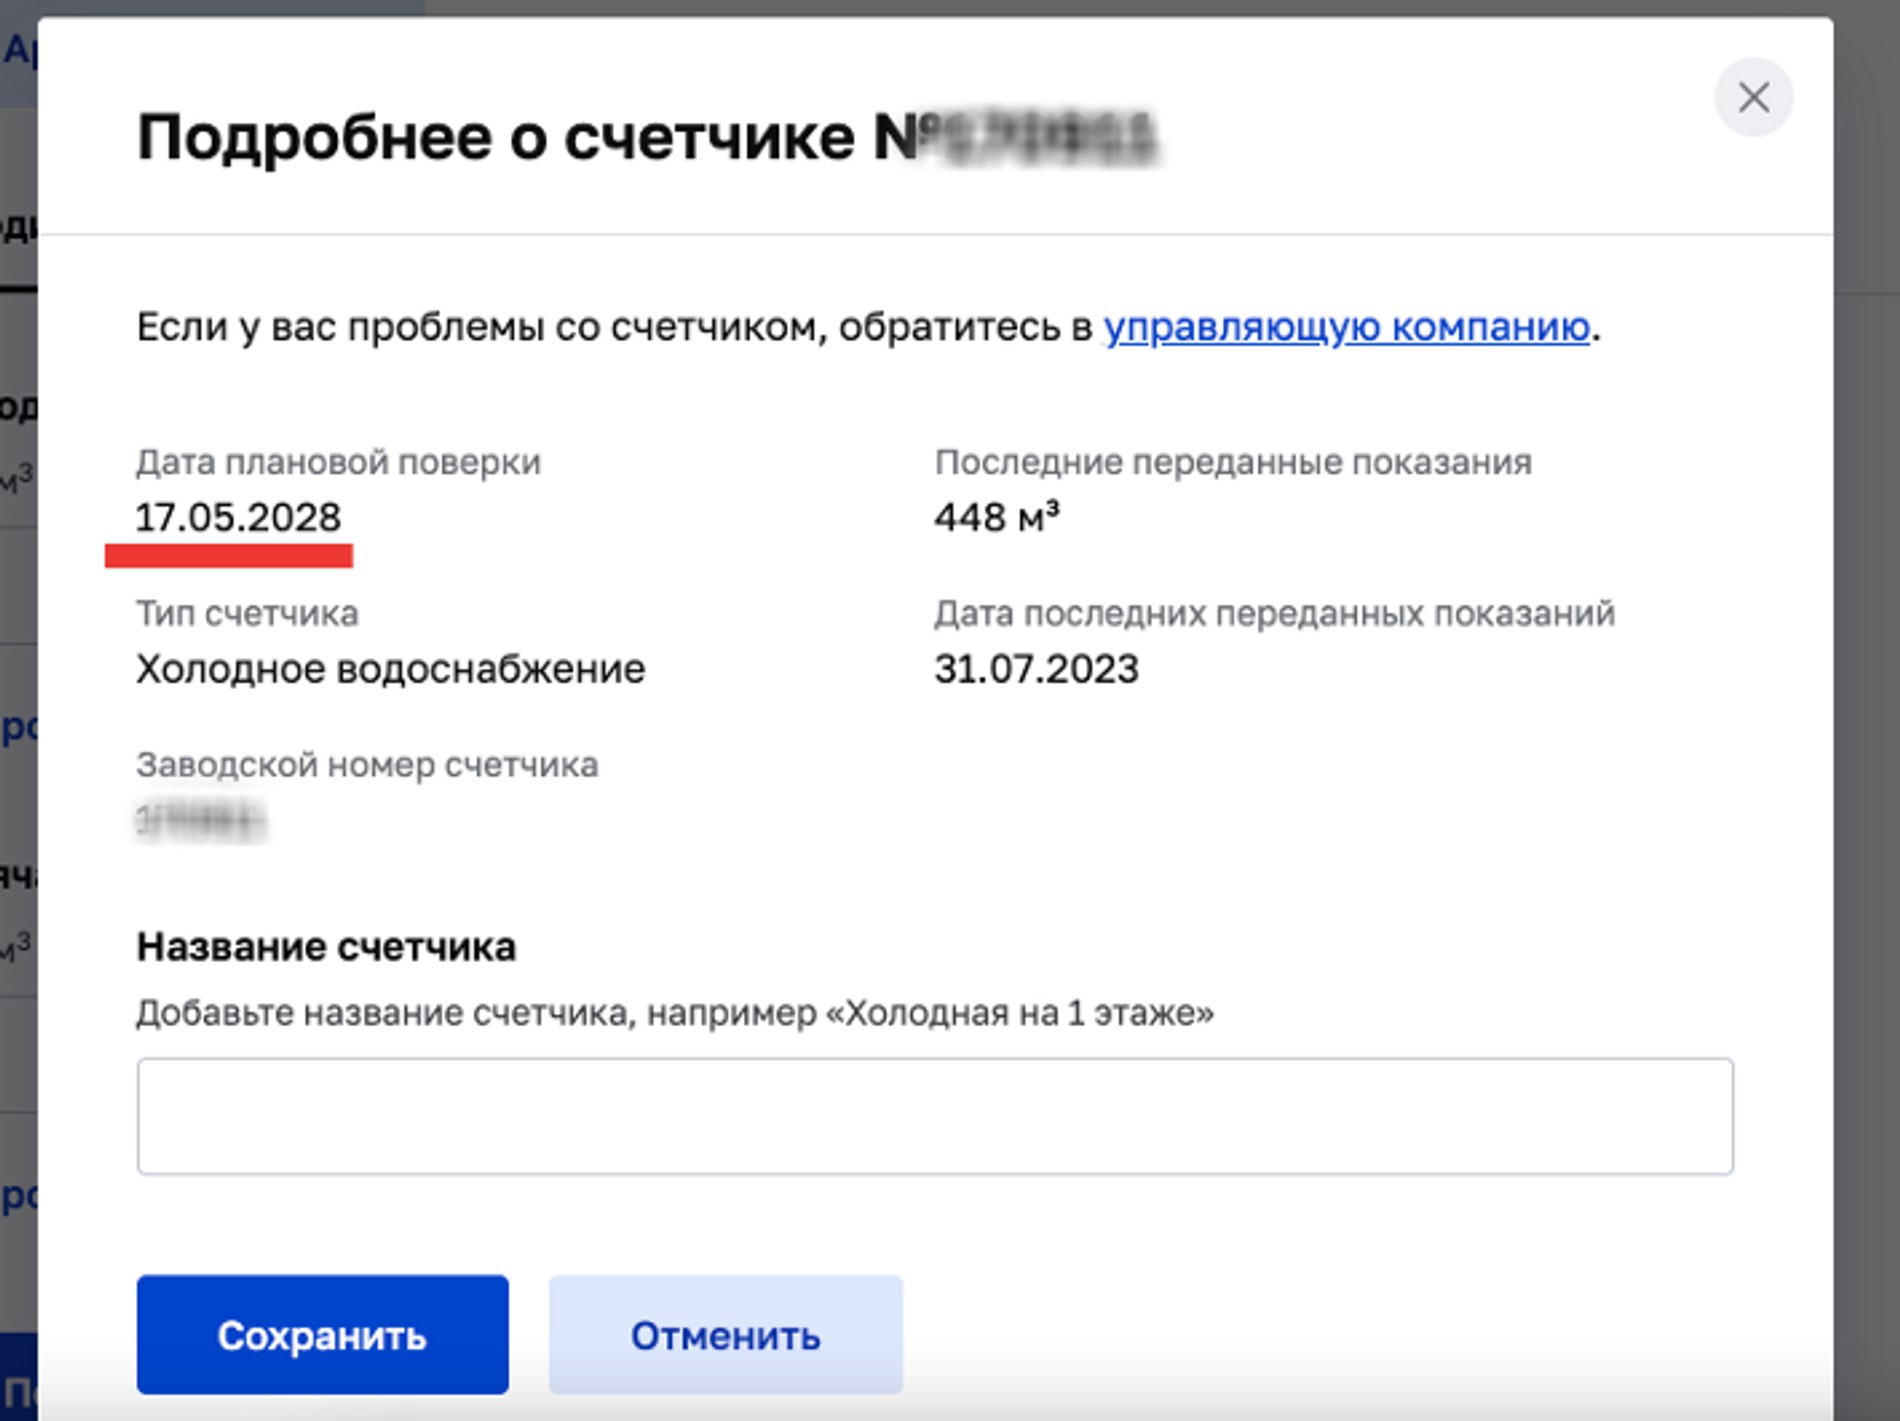 Даты поверки счетчика в личном кабинете на mos.ru. Источник: архив автора статьи